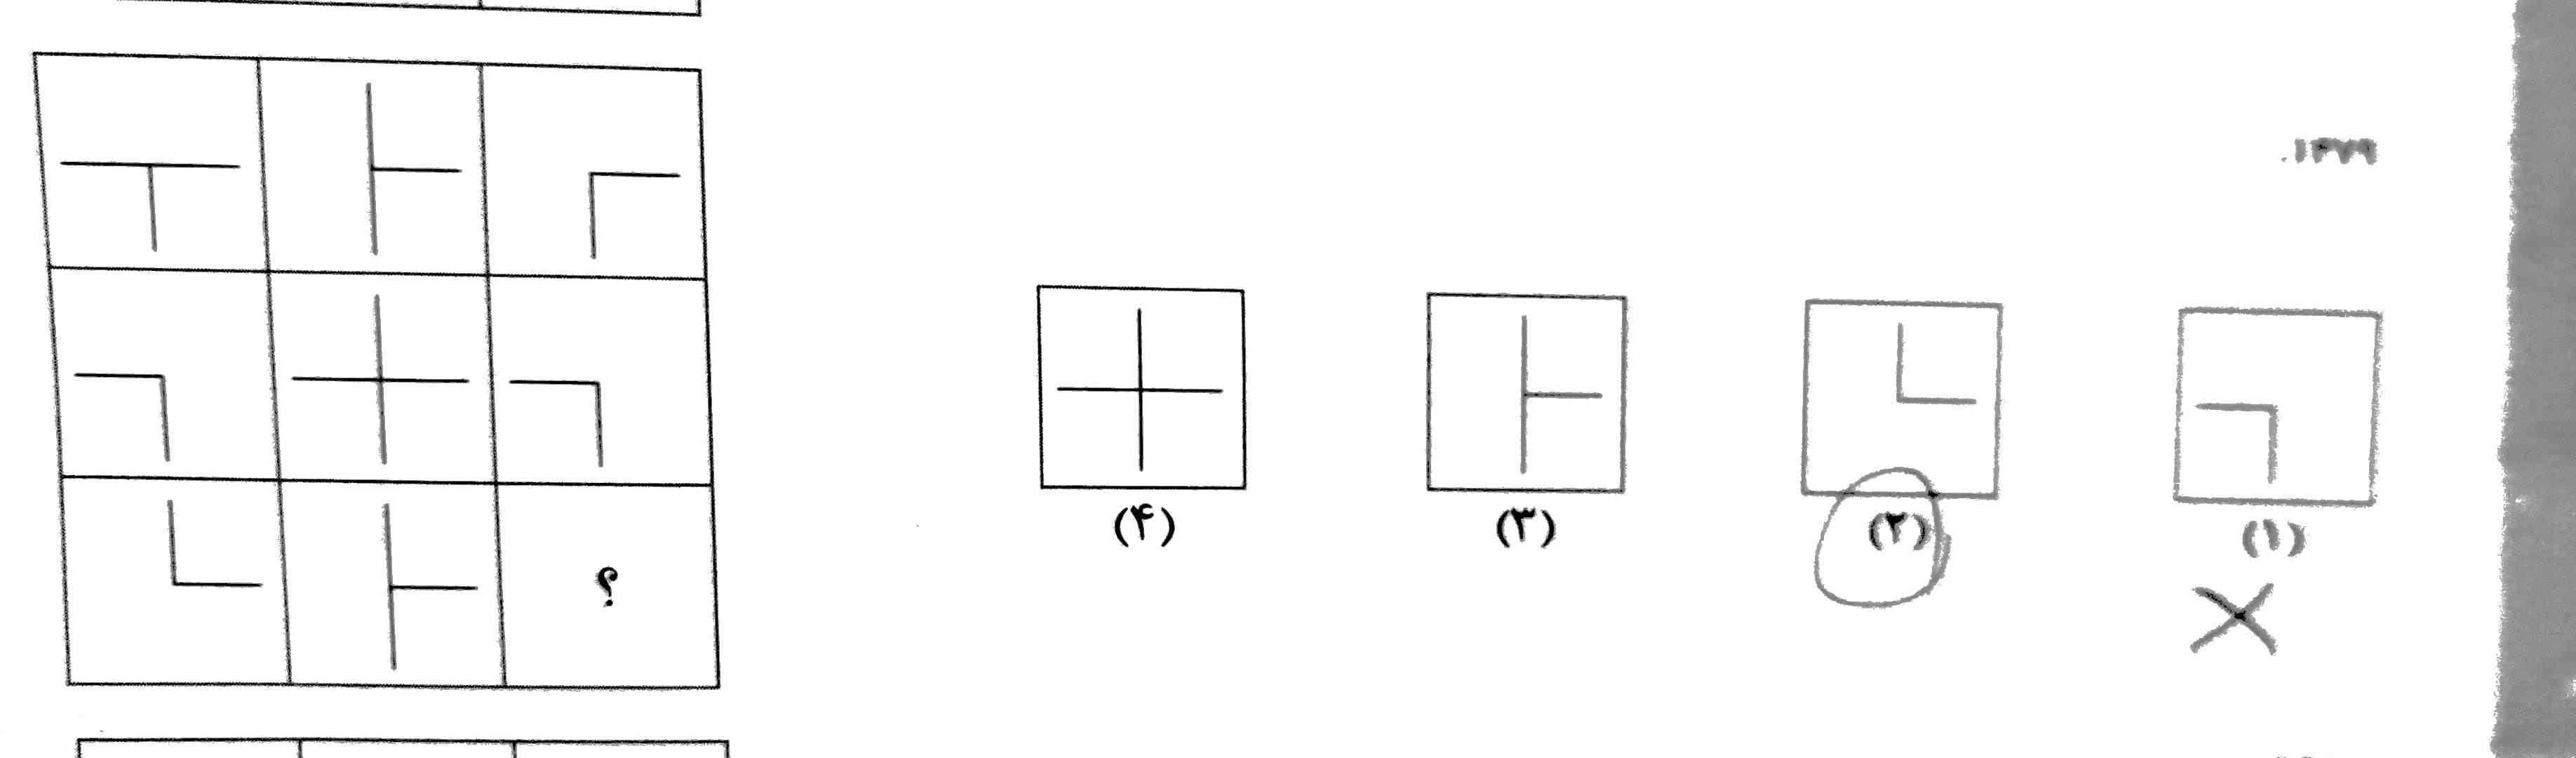 تو این ماتریس چرا گزینه ی ۳ درسته؟مگه از اشتراک دومربع سمت راست هر سطر مربع سمت چپ بدست نمیاد؟اینجوری که میشه گزینه ی ۲! 